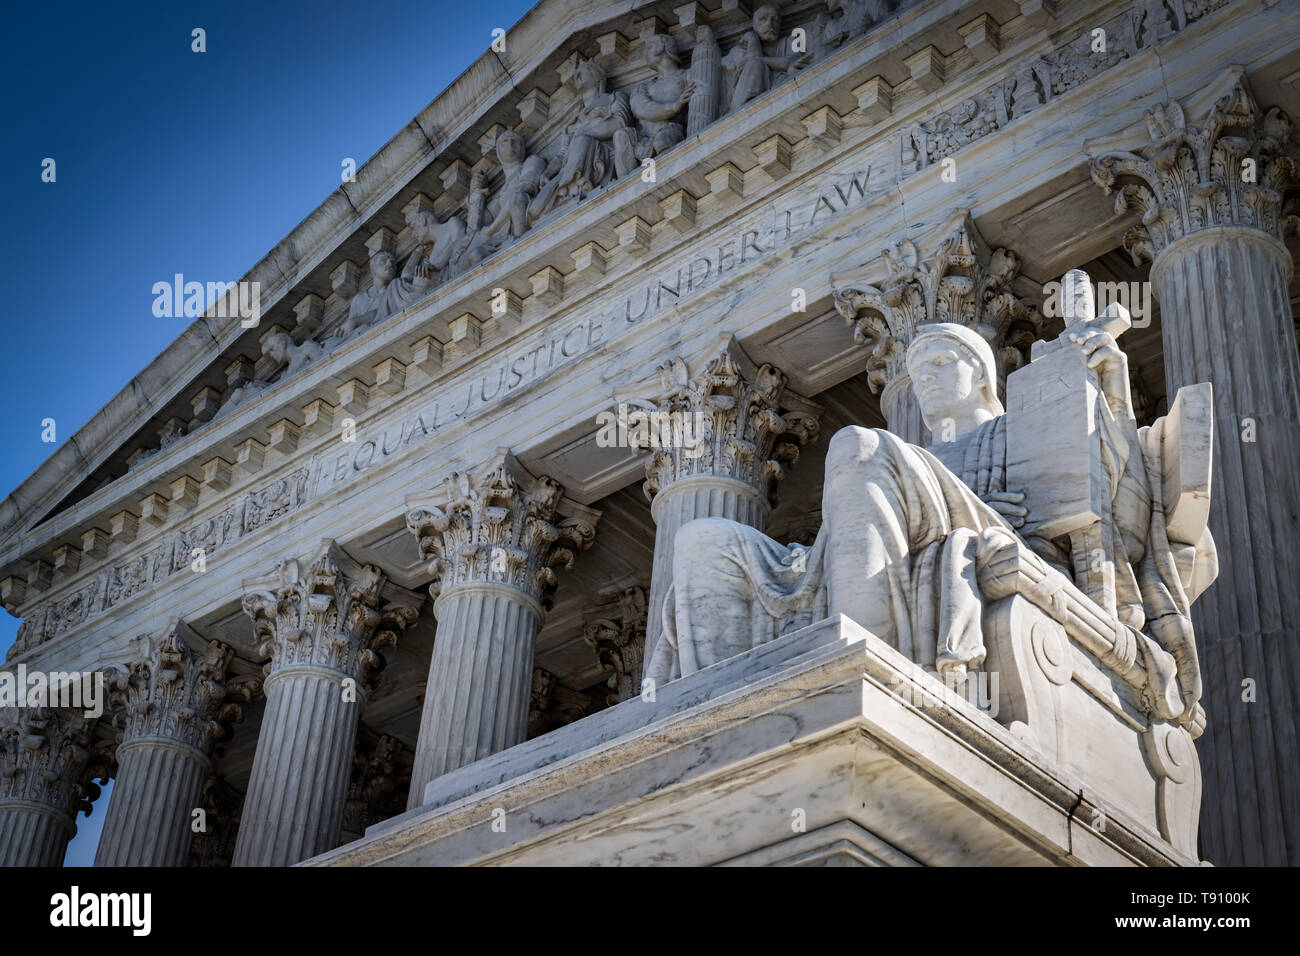 Une journée d'été en face de l'Édifice de la Cour suprême des Etats-Unis à Washington, DC. Banque D'Images